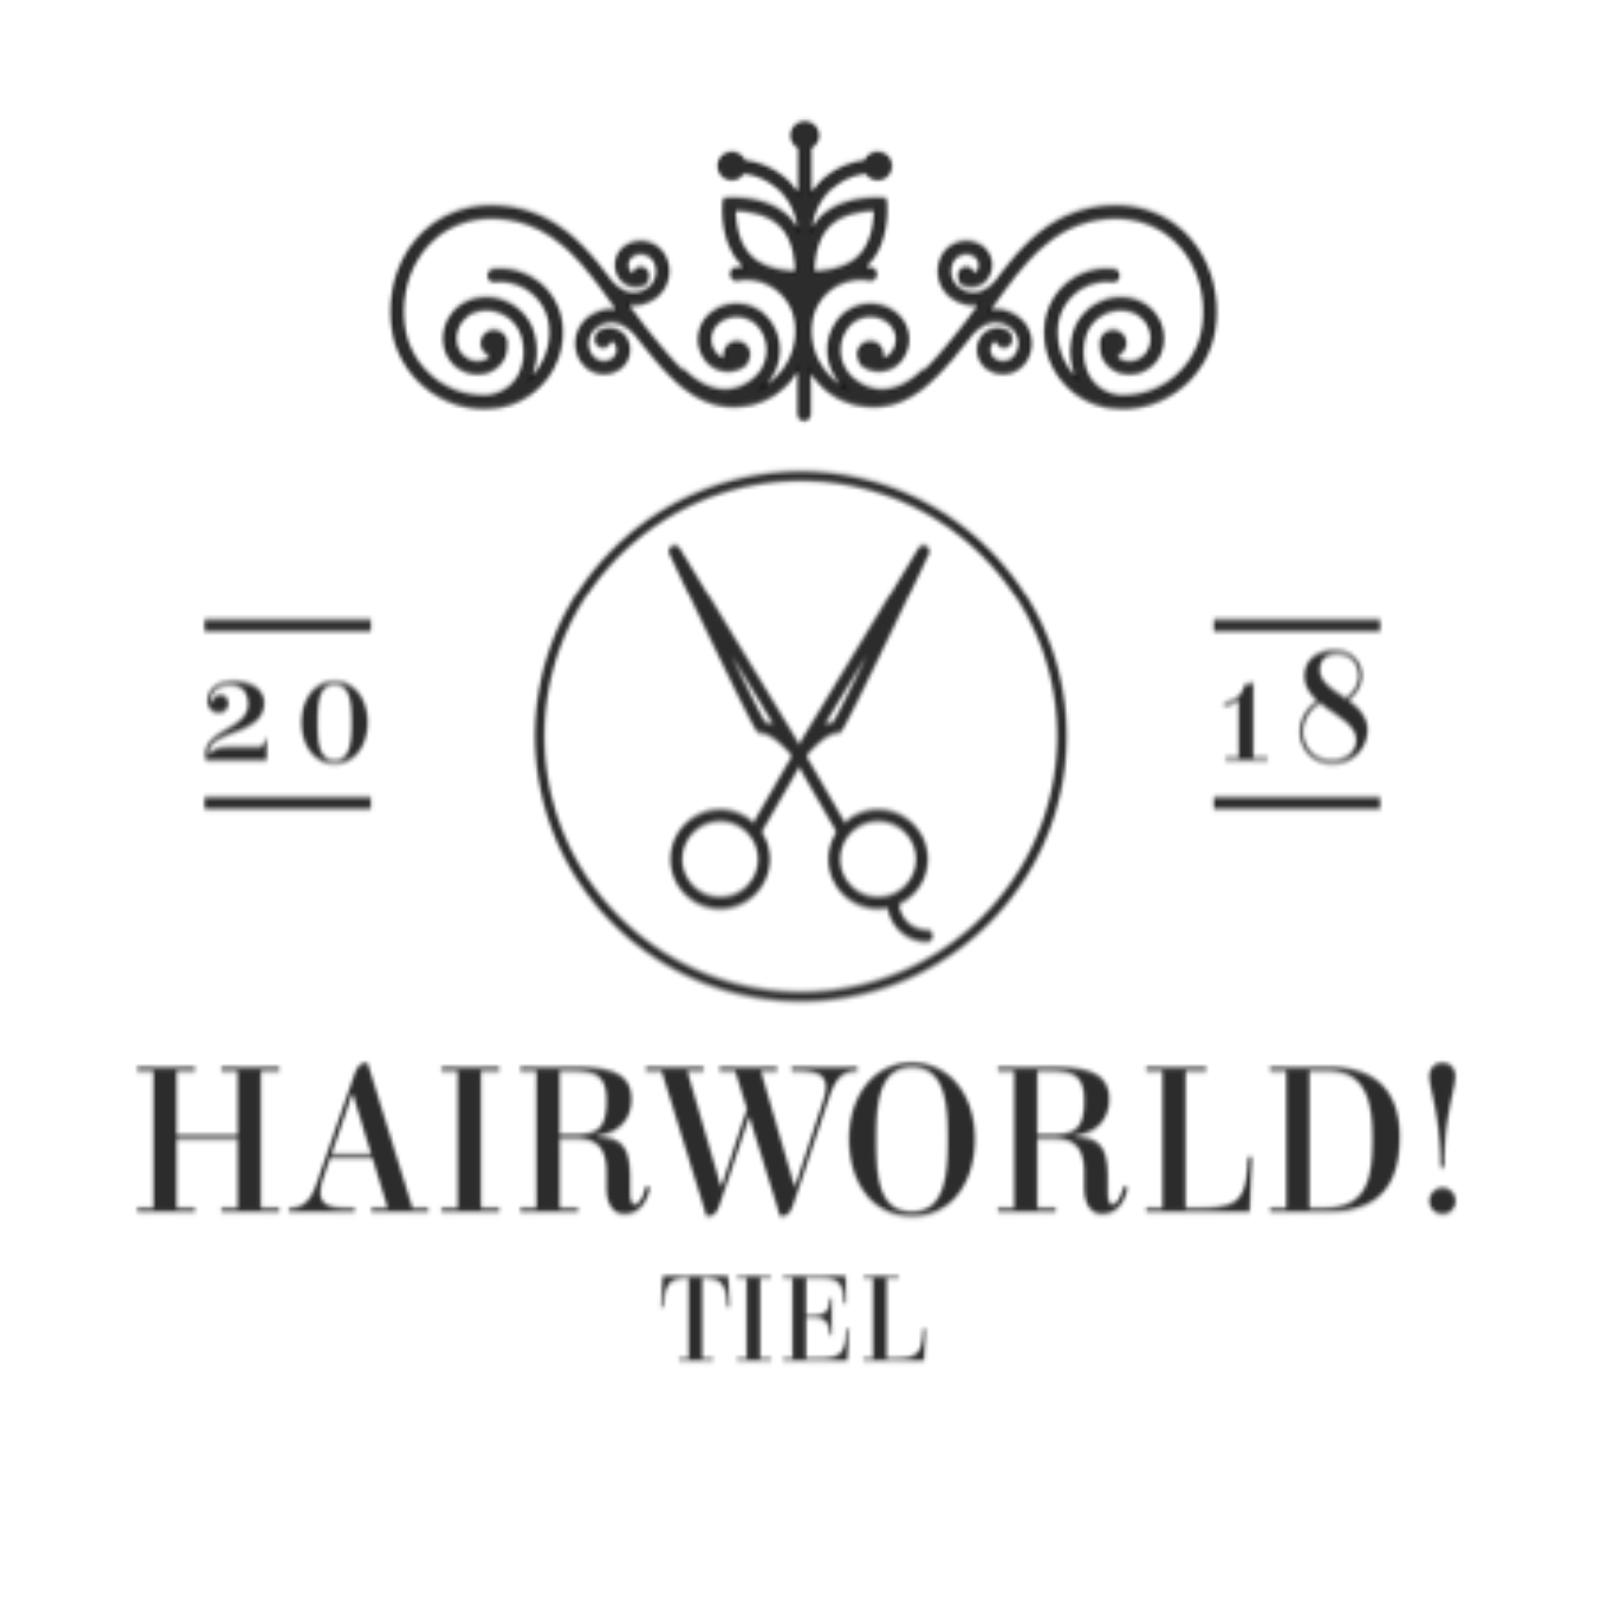 Hairworld! Tiel